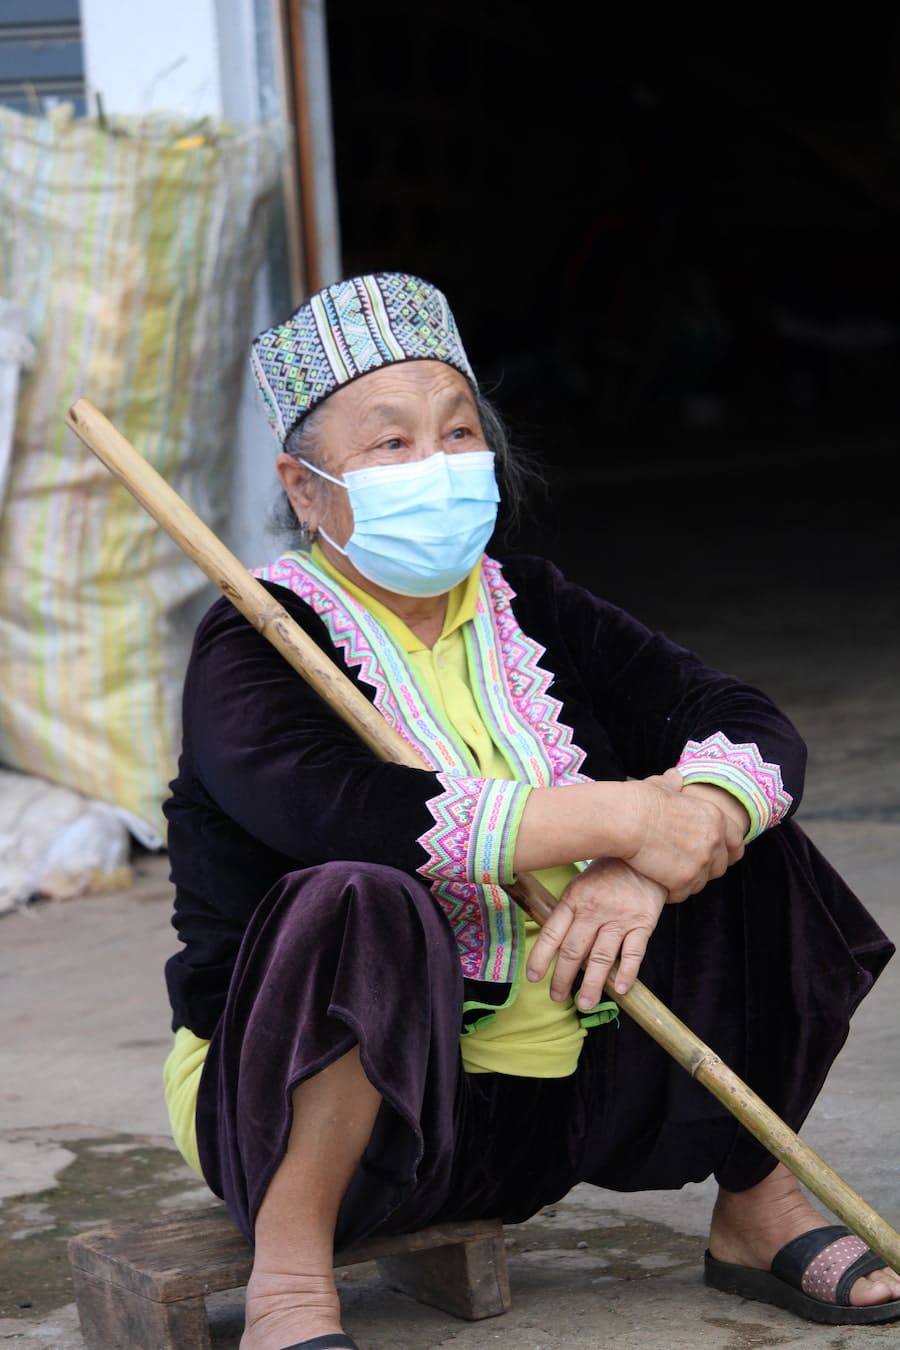 Femme de la tribu Hmong au nord de la Thaïlande dans notre article Road trip au nord de la Thaïlande à la rencontre des tribus des montagnes #thailande #nord #tribu #peuple #montagnes #roadtrip #asie #voyage